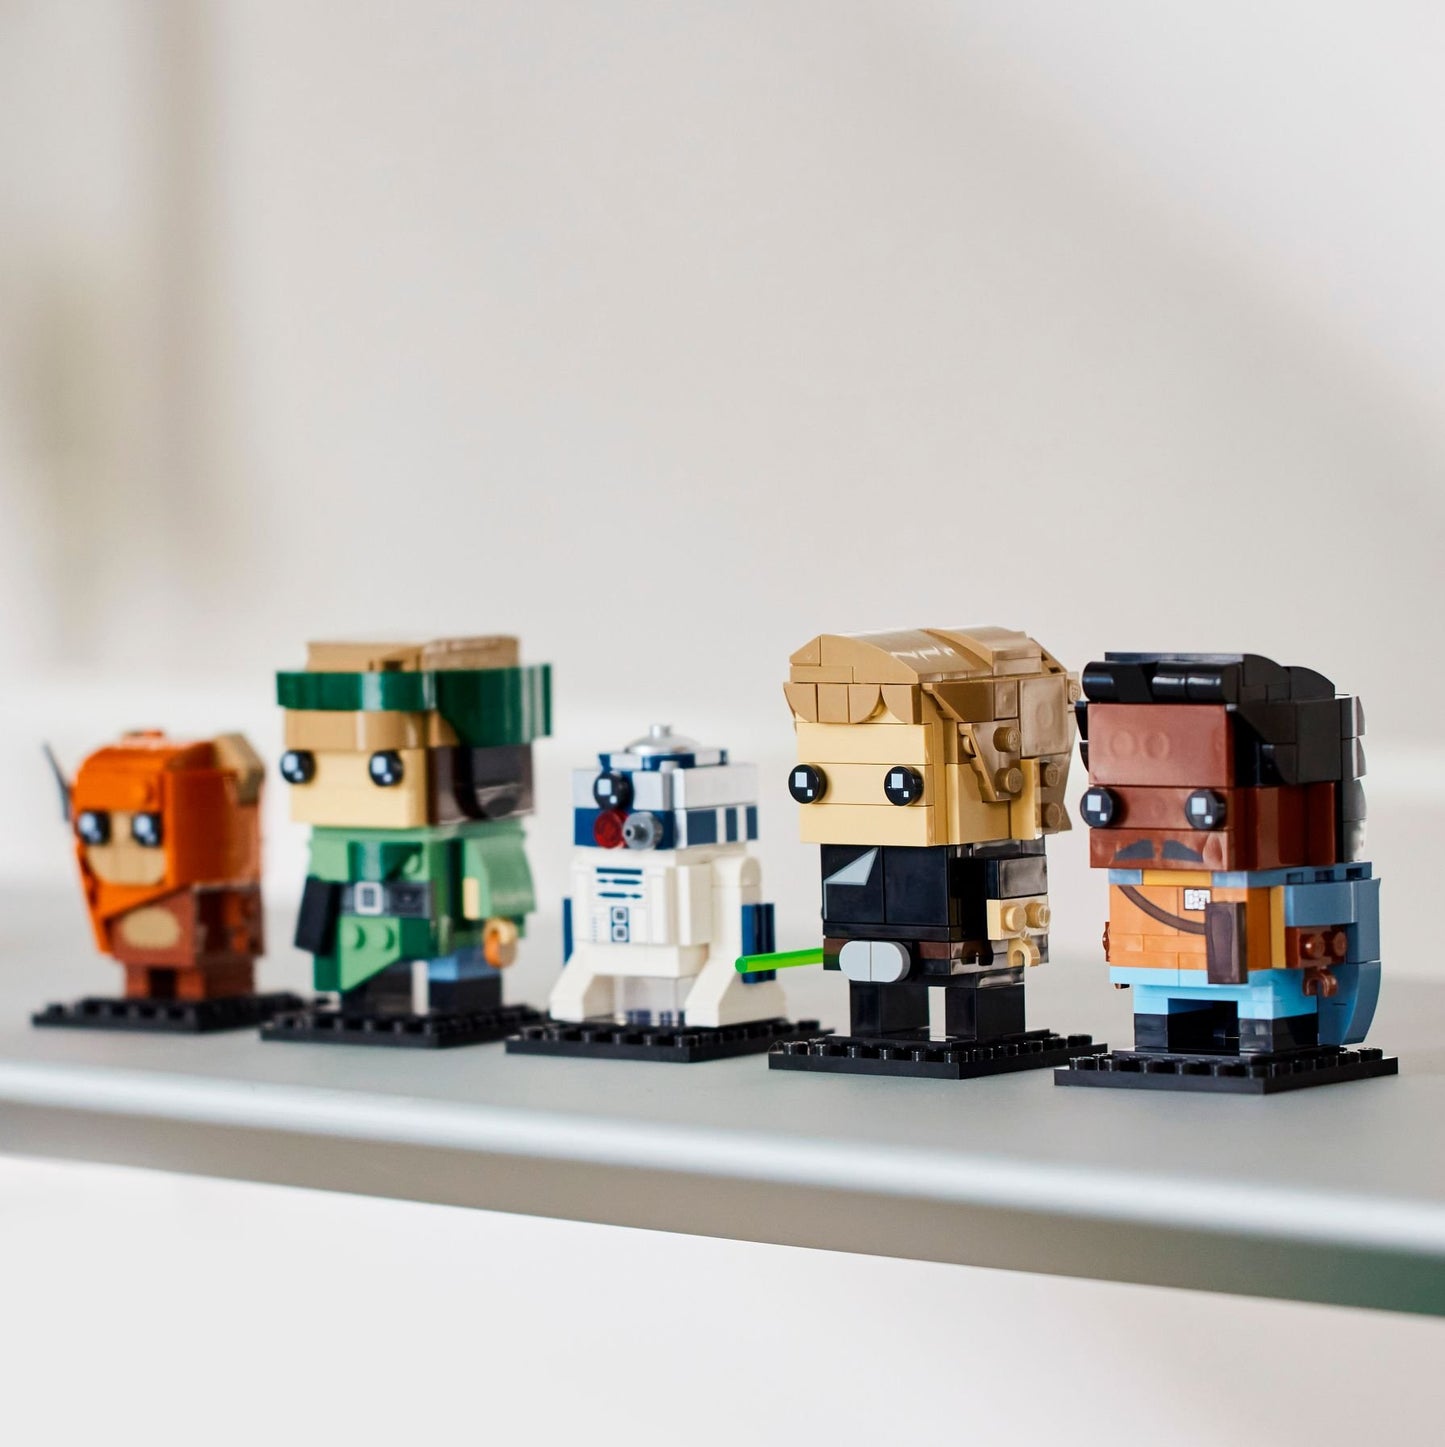 LEGO® BrickHeadz™ 40623 Helden von Endor - 214 Teile